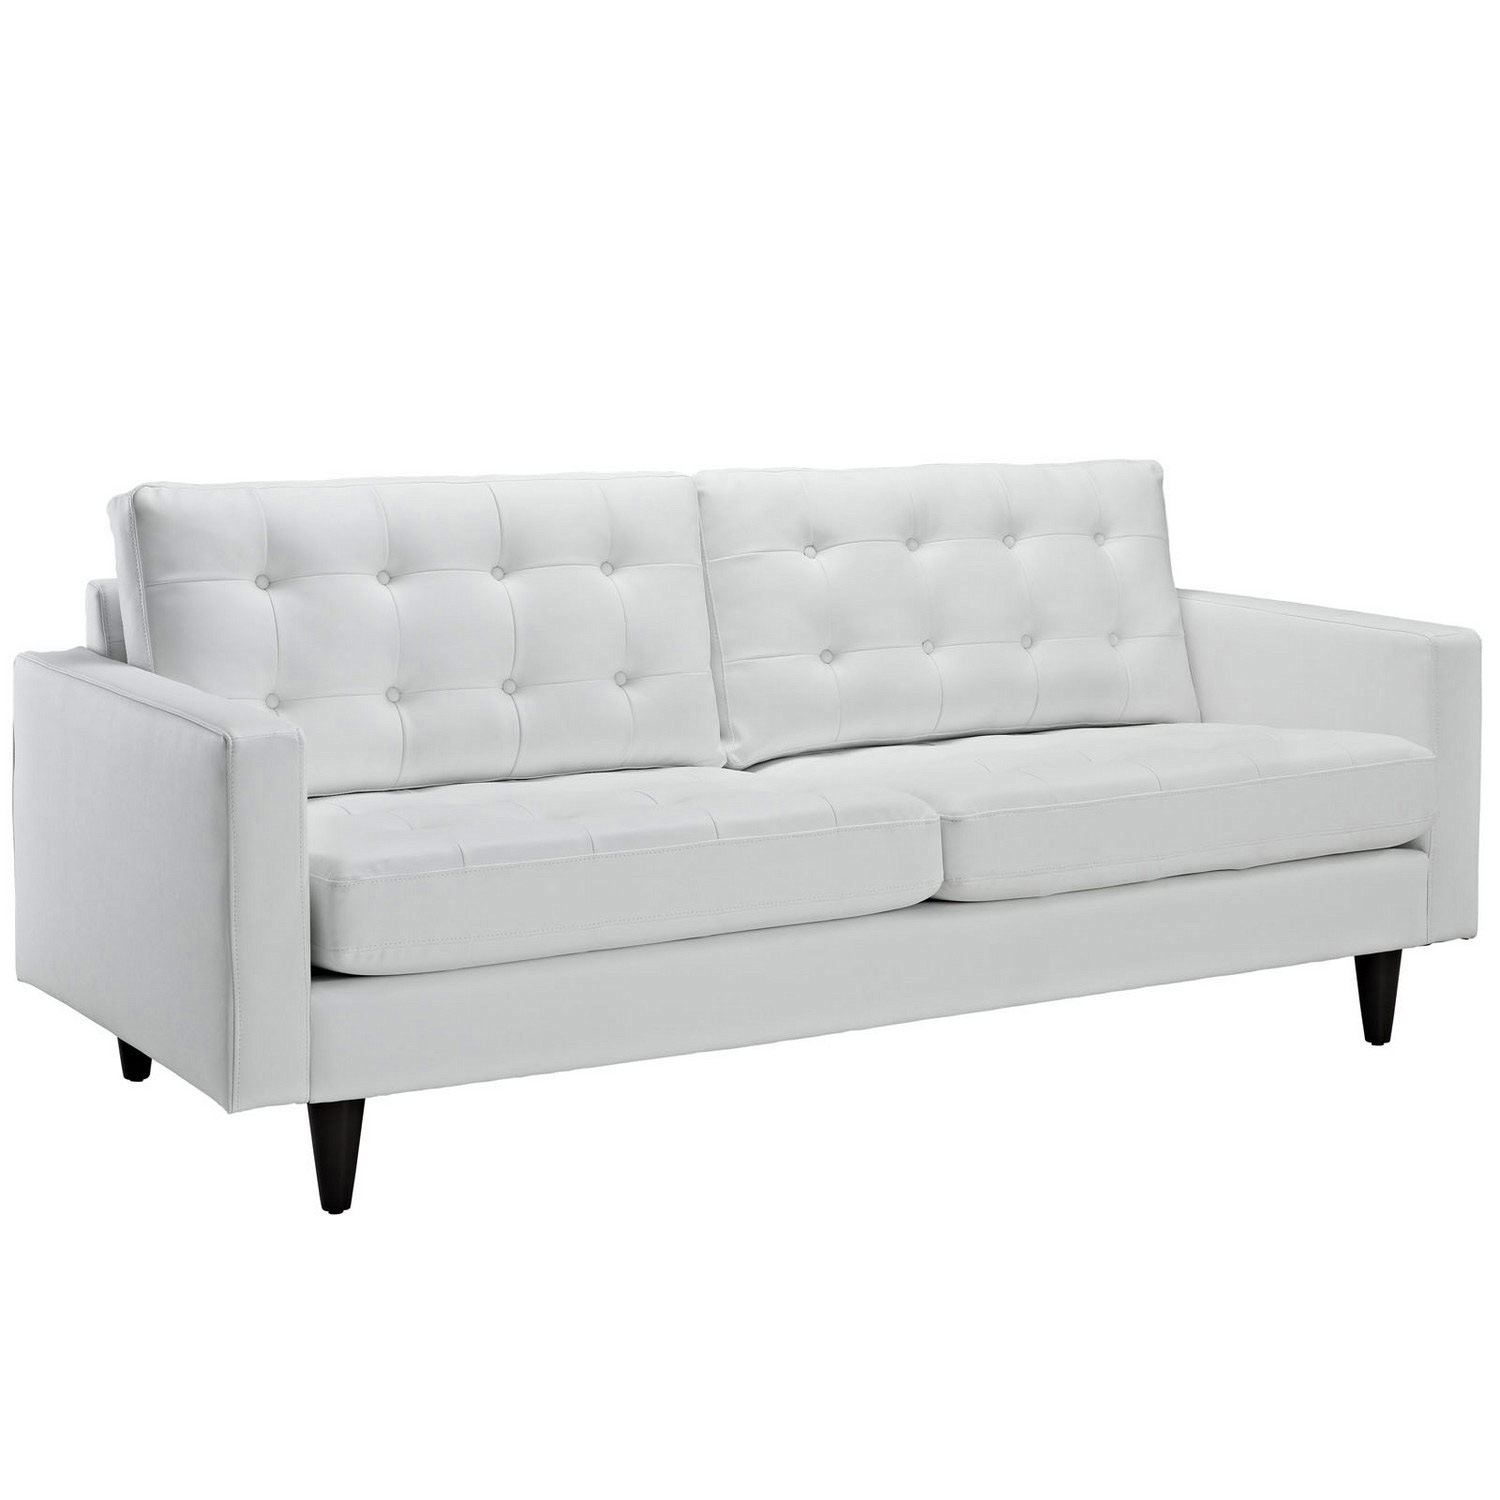 Modway Empress Leather Sofa - White